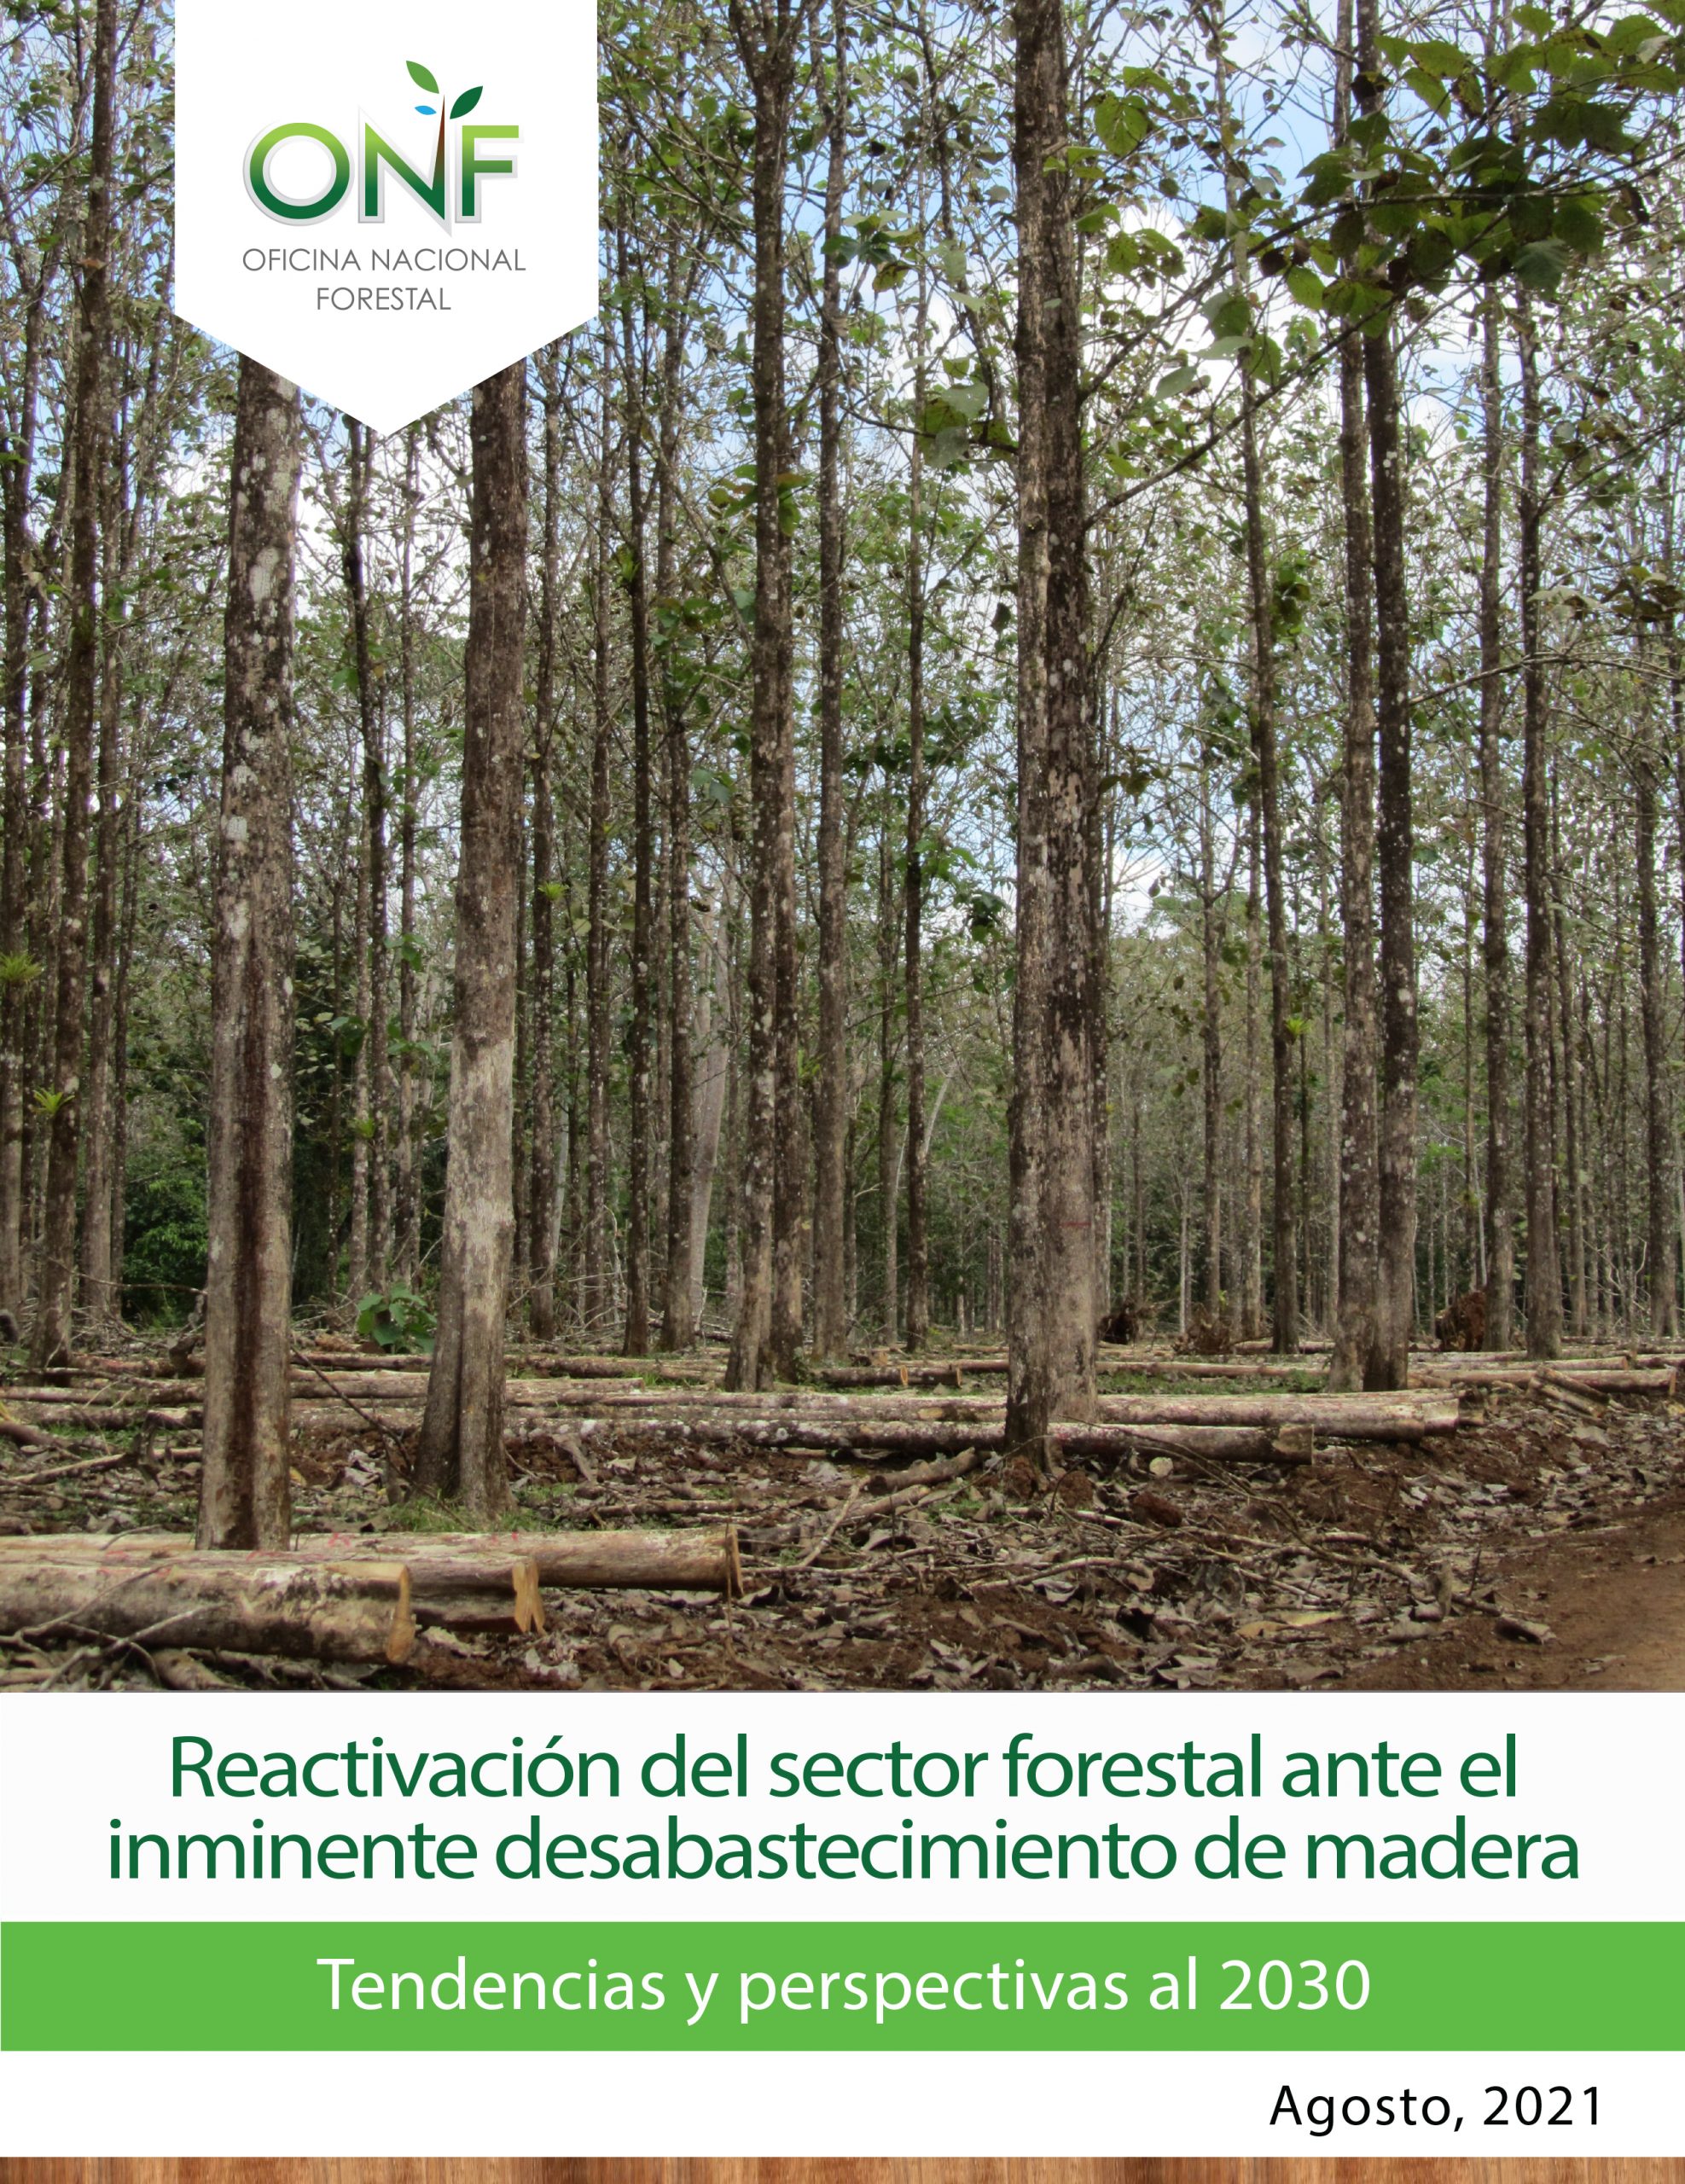 Reactivación del sector forestal ante inminente desabastecimiento de madera: tendencias y perspectivas al 2030